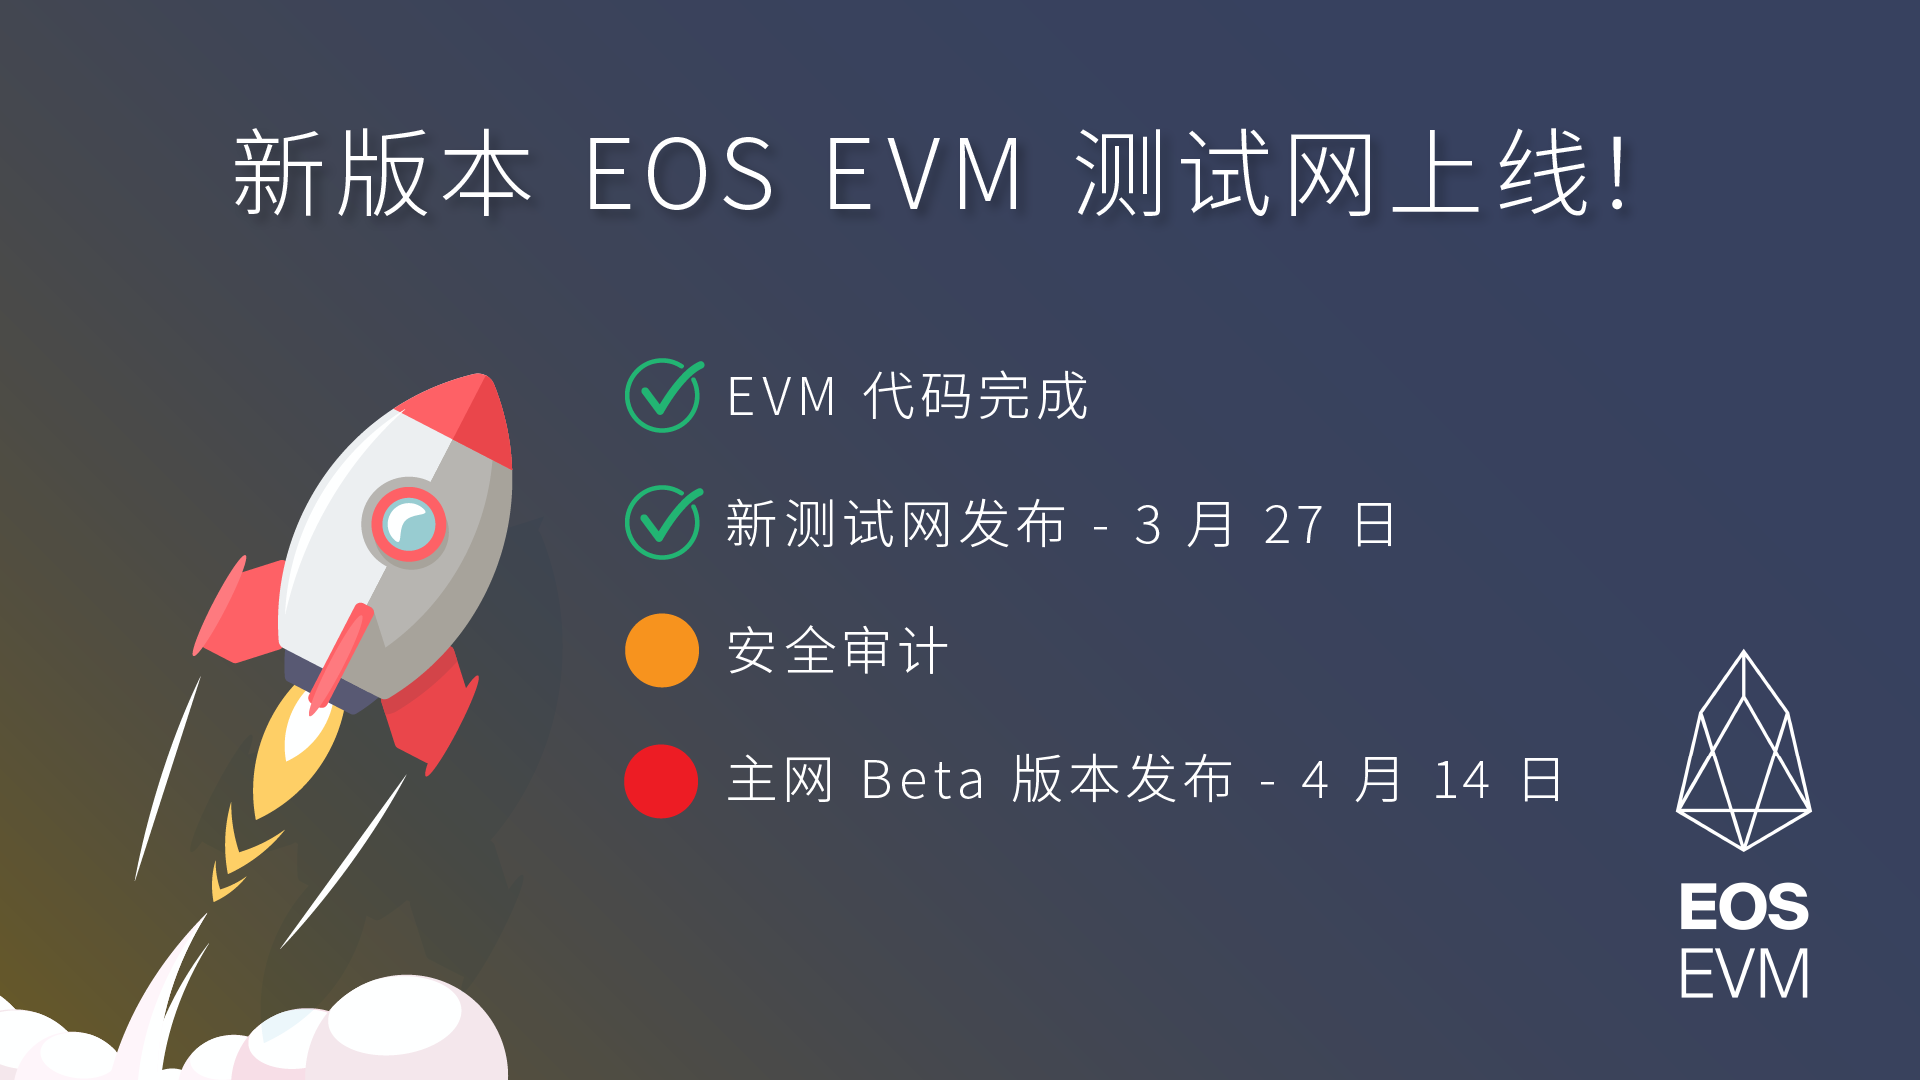 EOS EVM 测试网上线